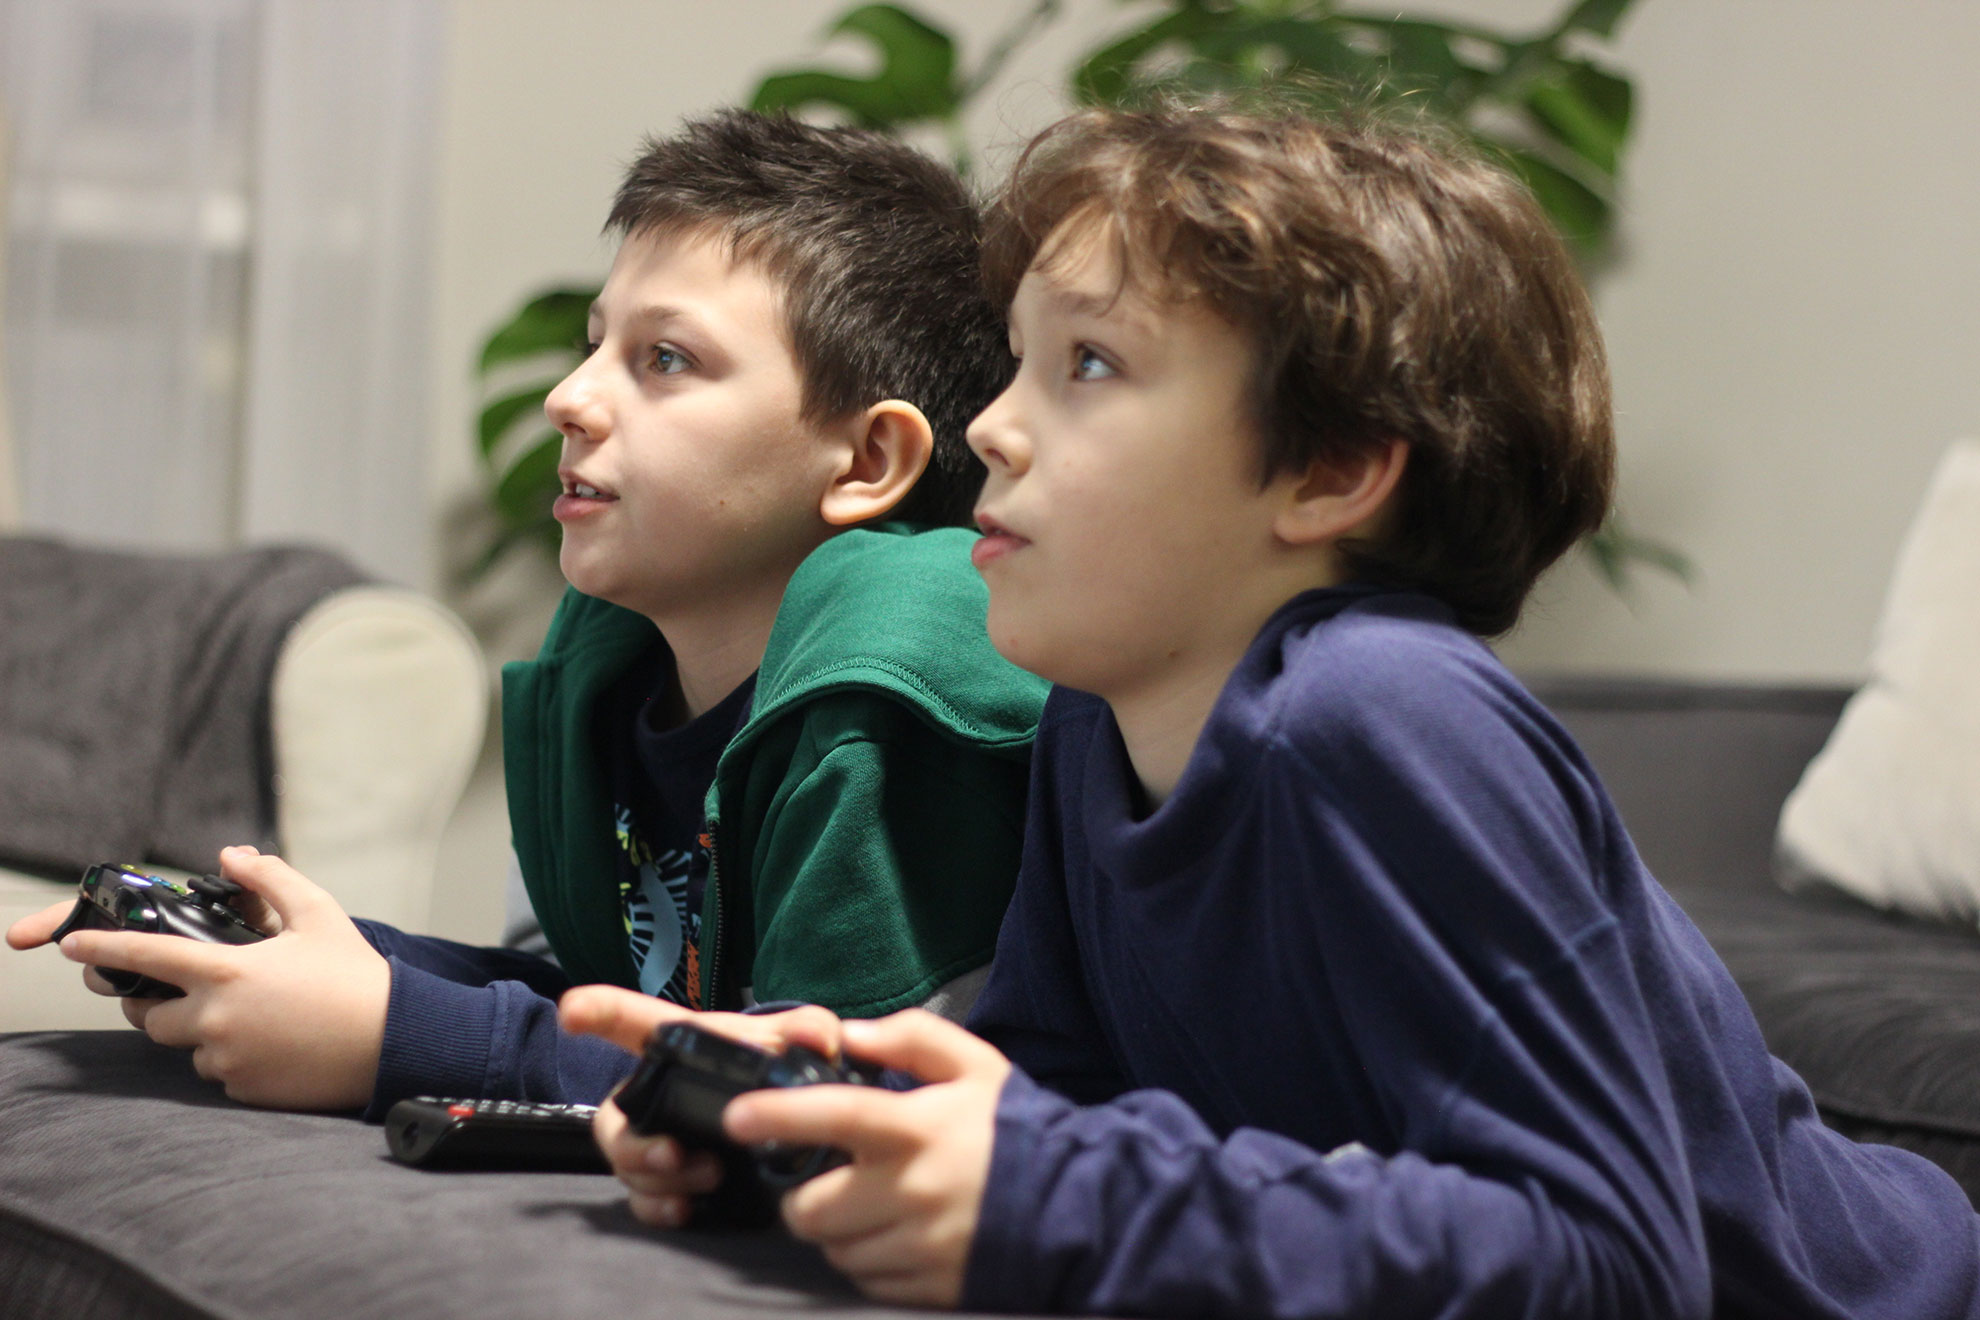 Chłopcy grający w grę. Ilustracja do artykułu o grze Minecraft